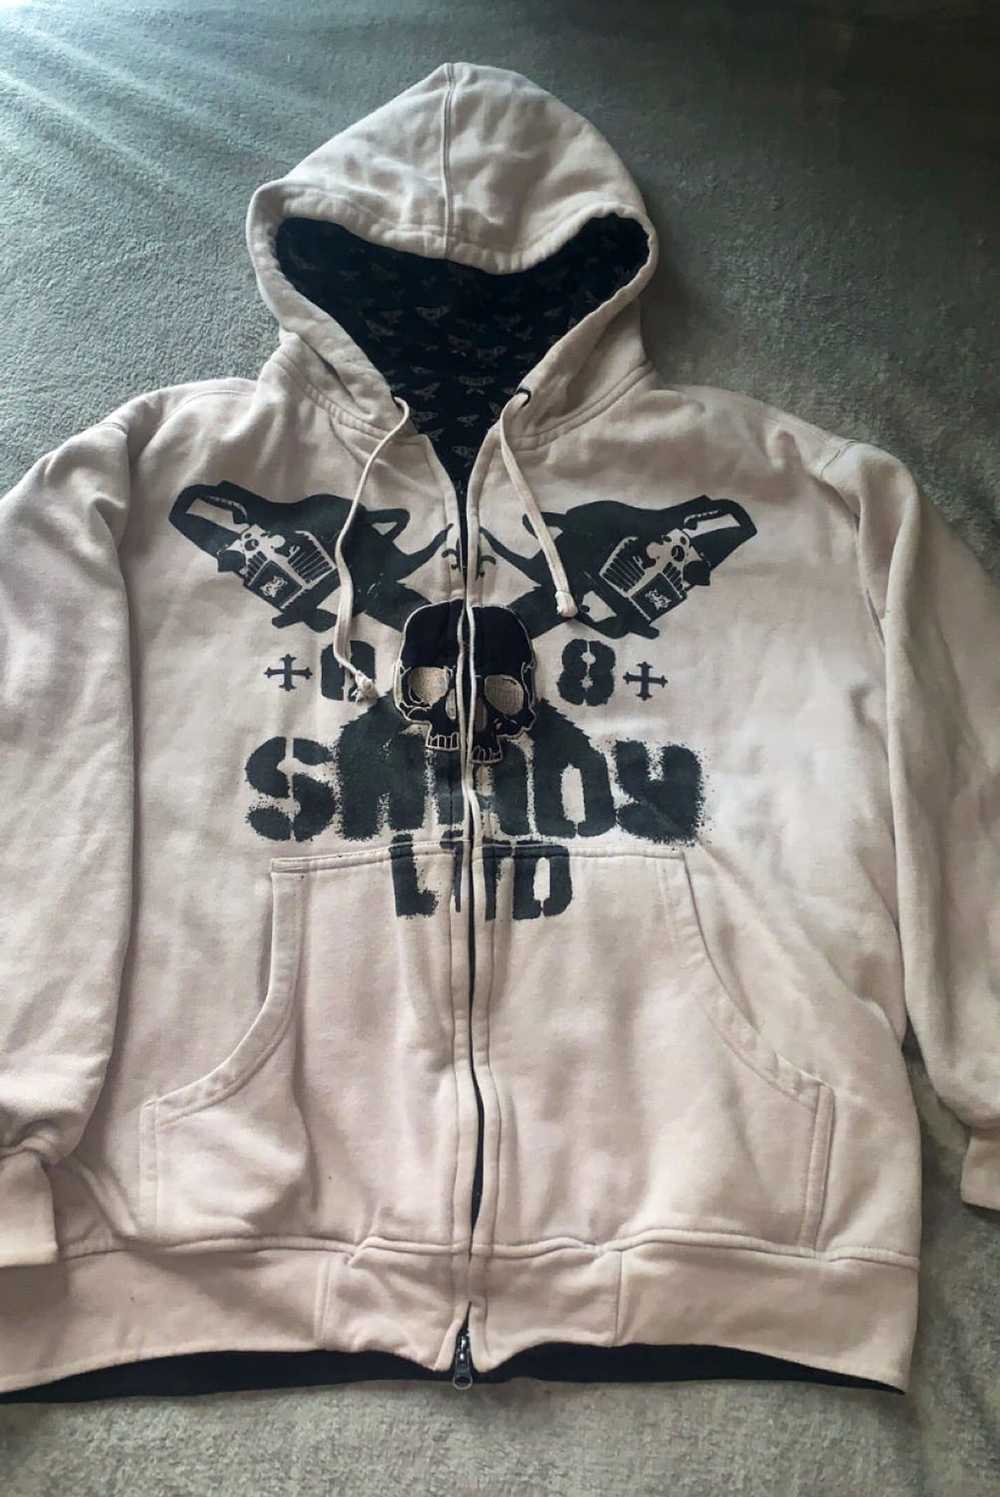 shady ltd by slim shady eminem hoodie for Sale in Whittier, CA